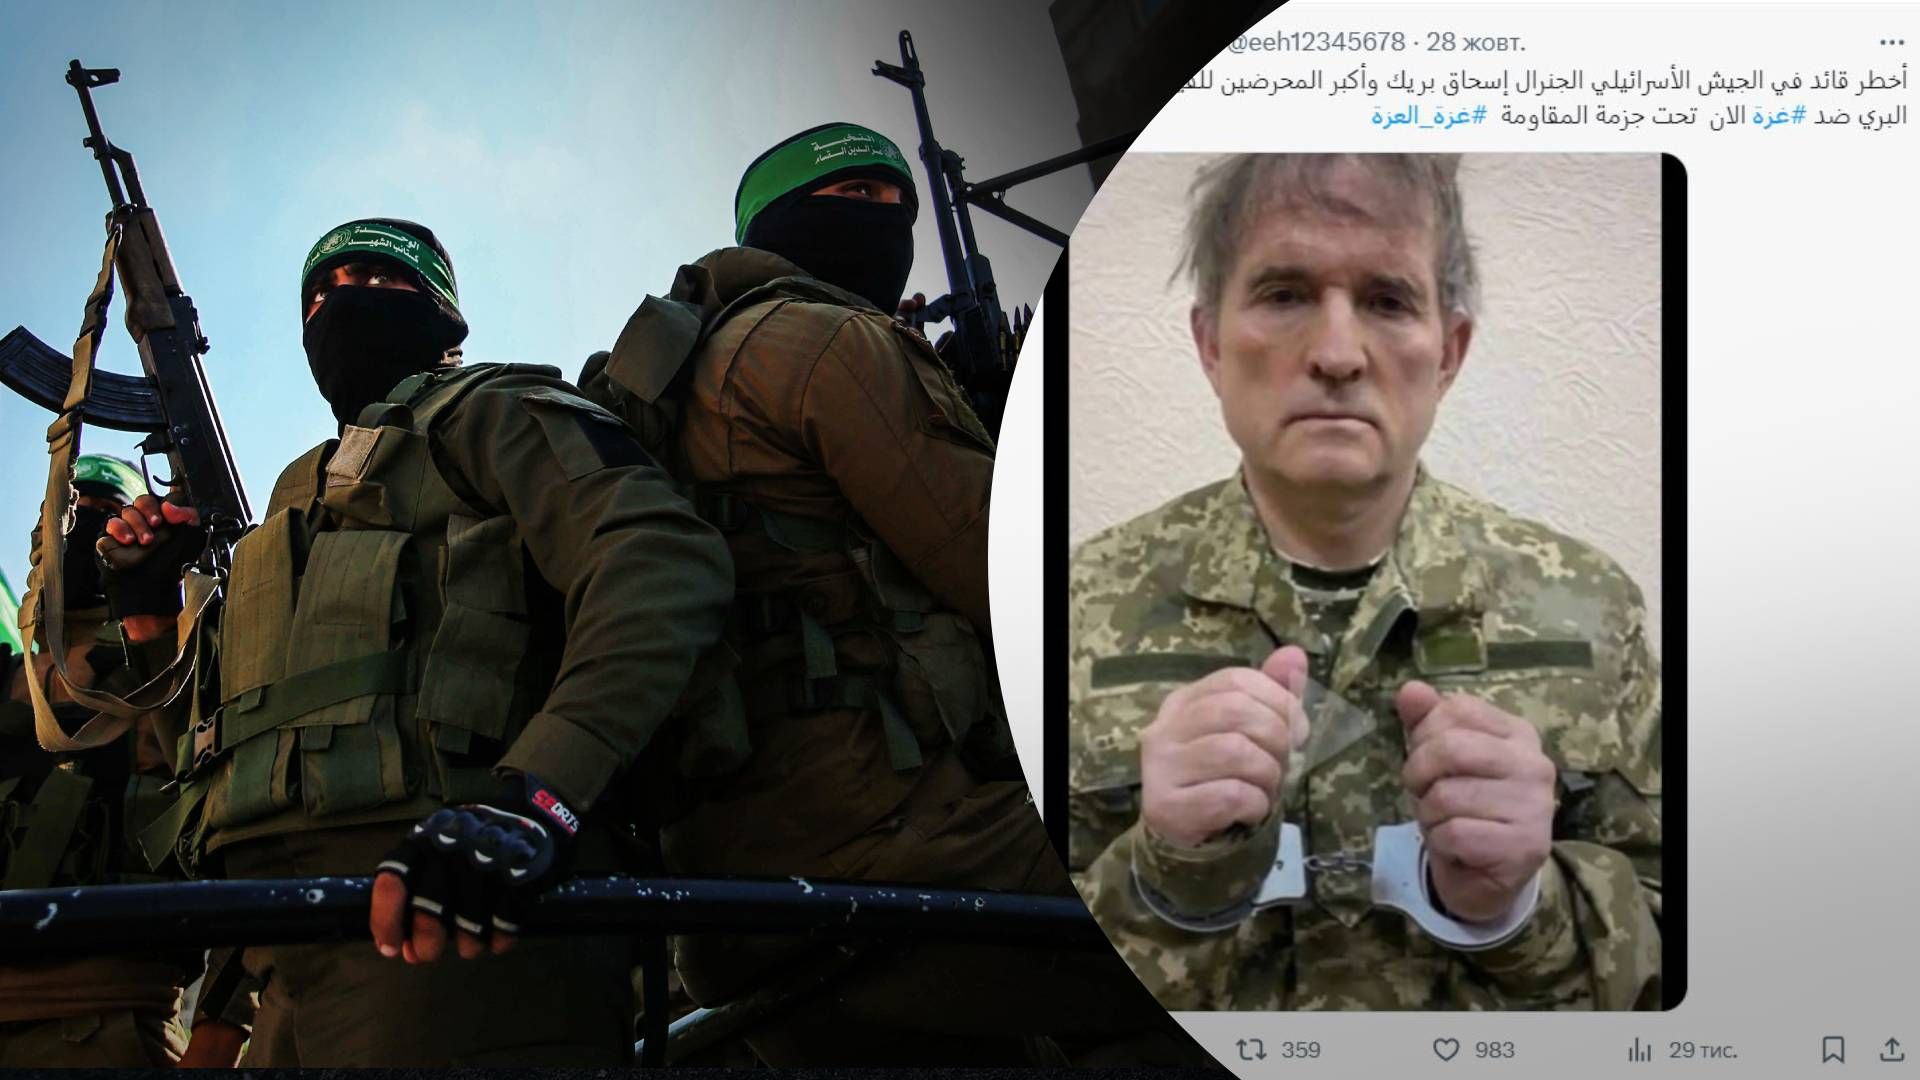  СМИ Палестины показали фото Медведчука вместо израильского офицера - 24 Канал